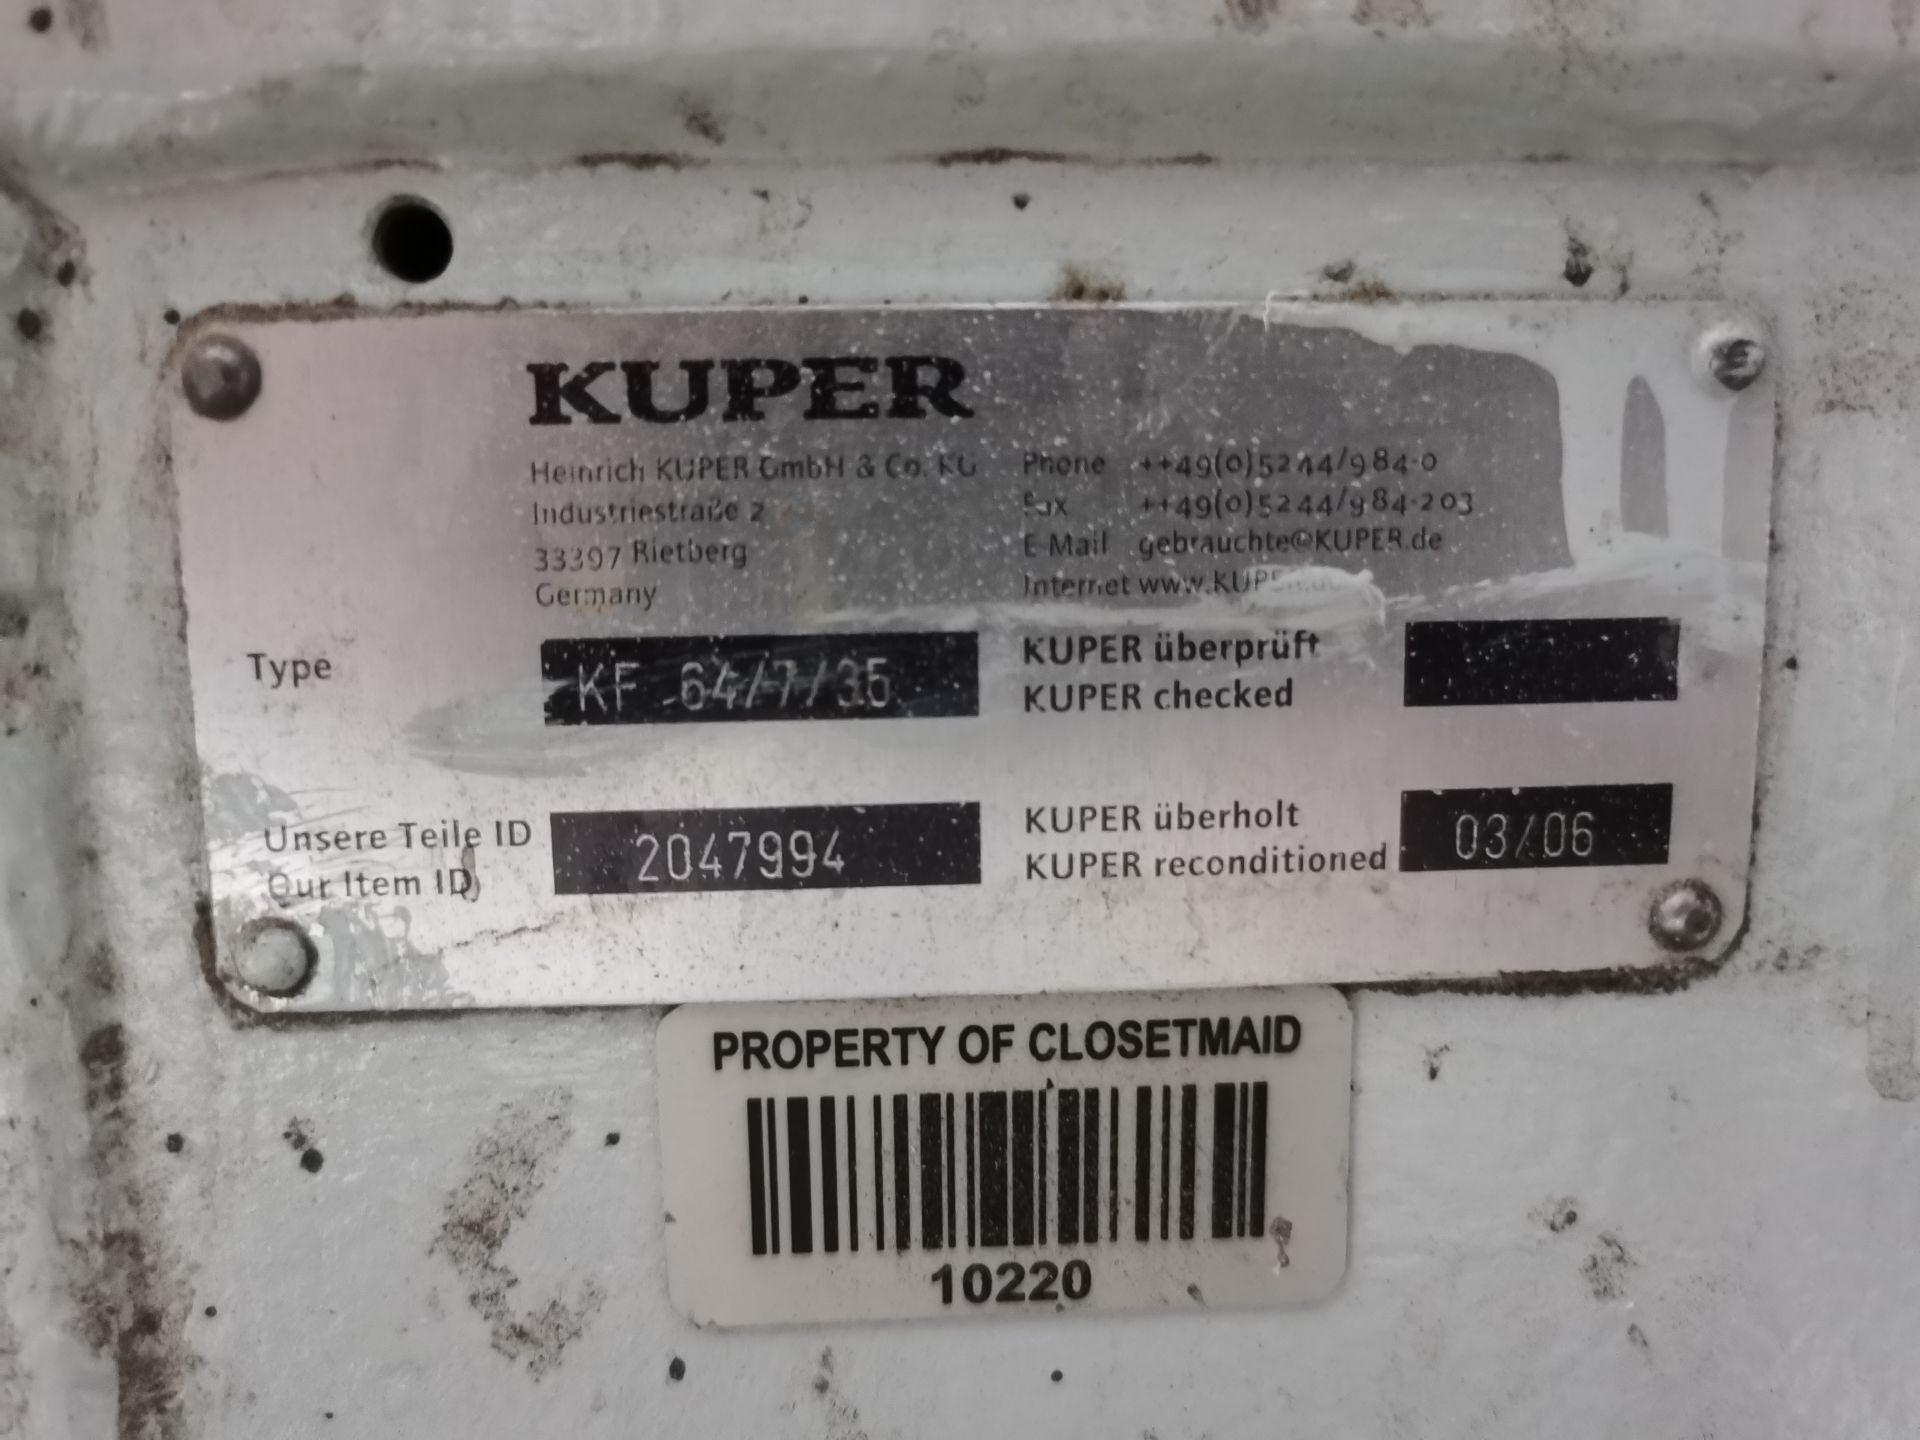 Kuper Double Edge Bander, Model KF 64/7/35, S/N 0-064-11-0003, Year 1999, 480 V / 60 Hz, ASSET - Image 19 of 58